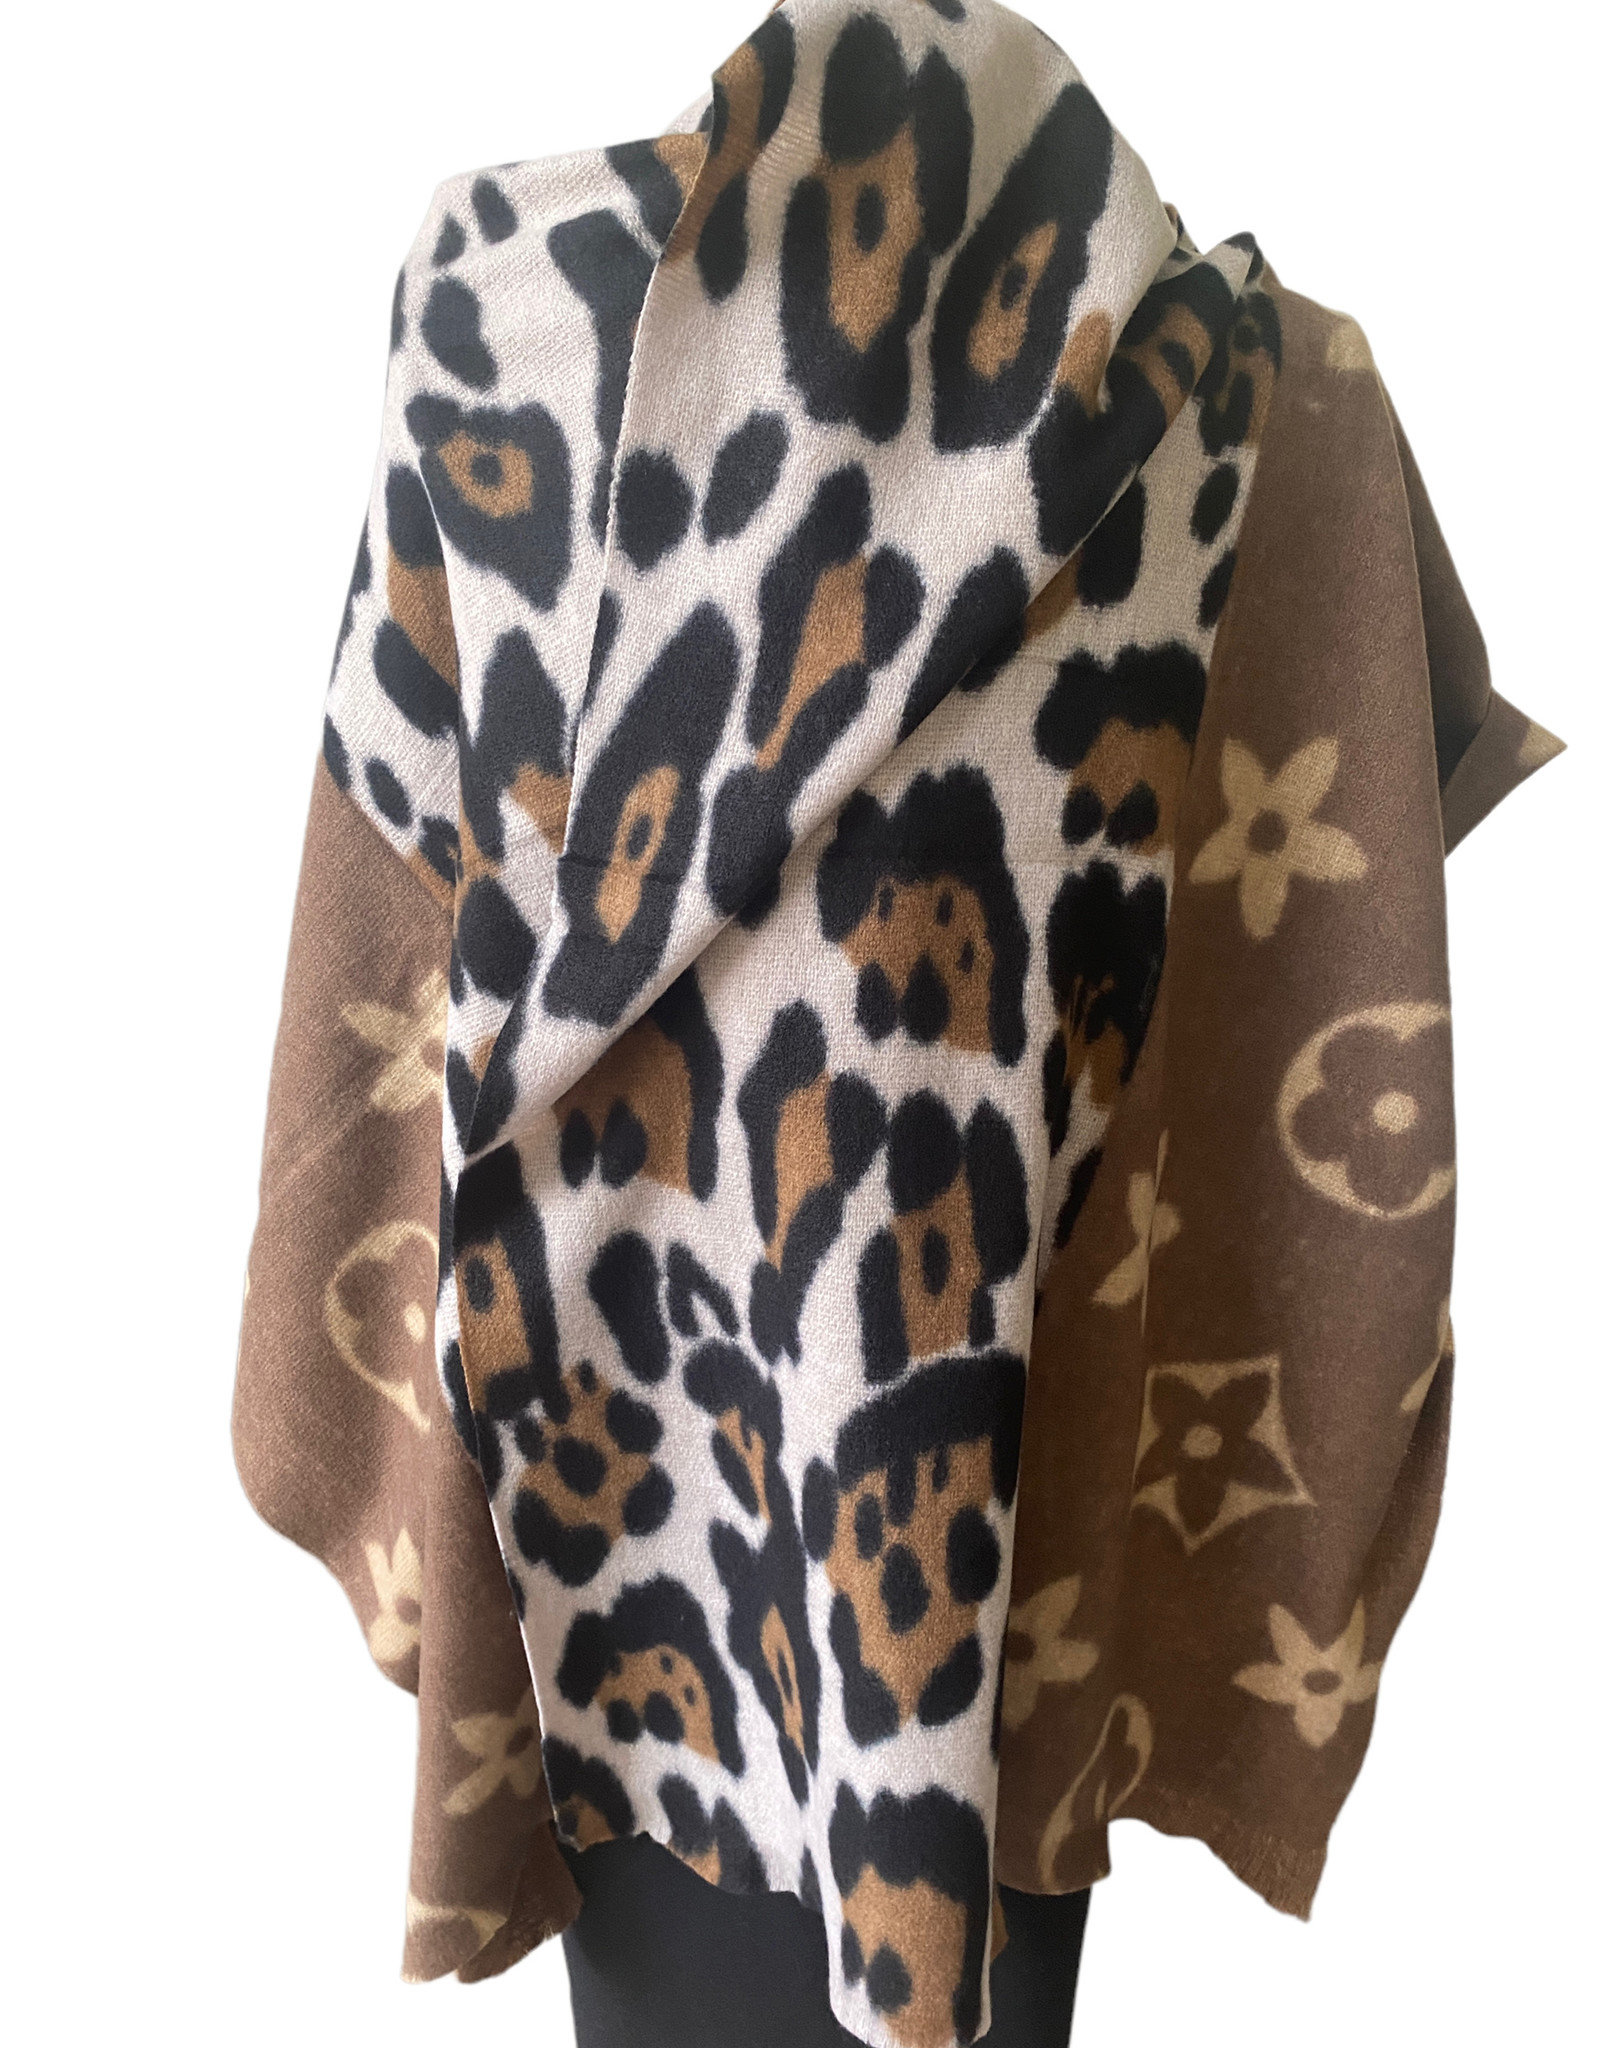 Langwerpige bruine tinten sjaal combi met leopard print en brand logo. Superzachte stof.